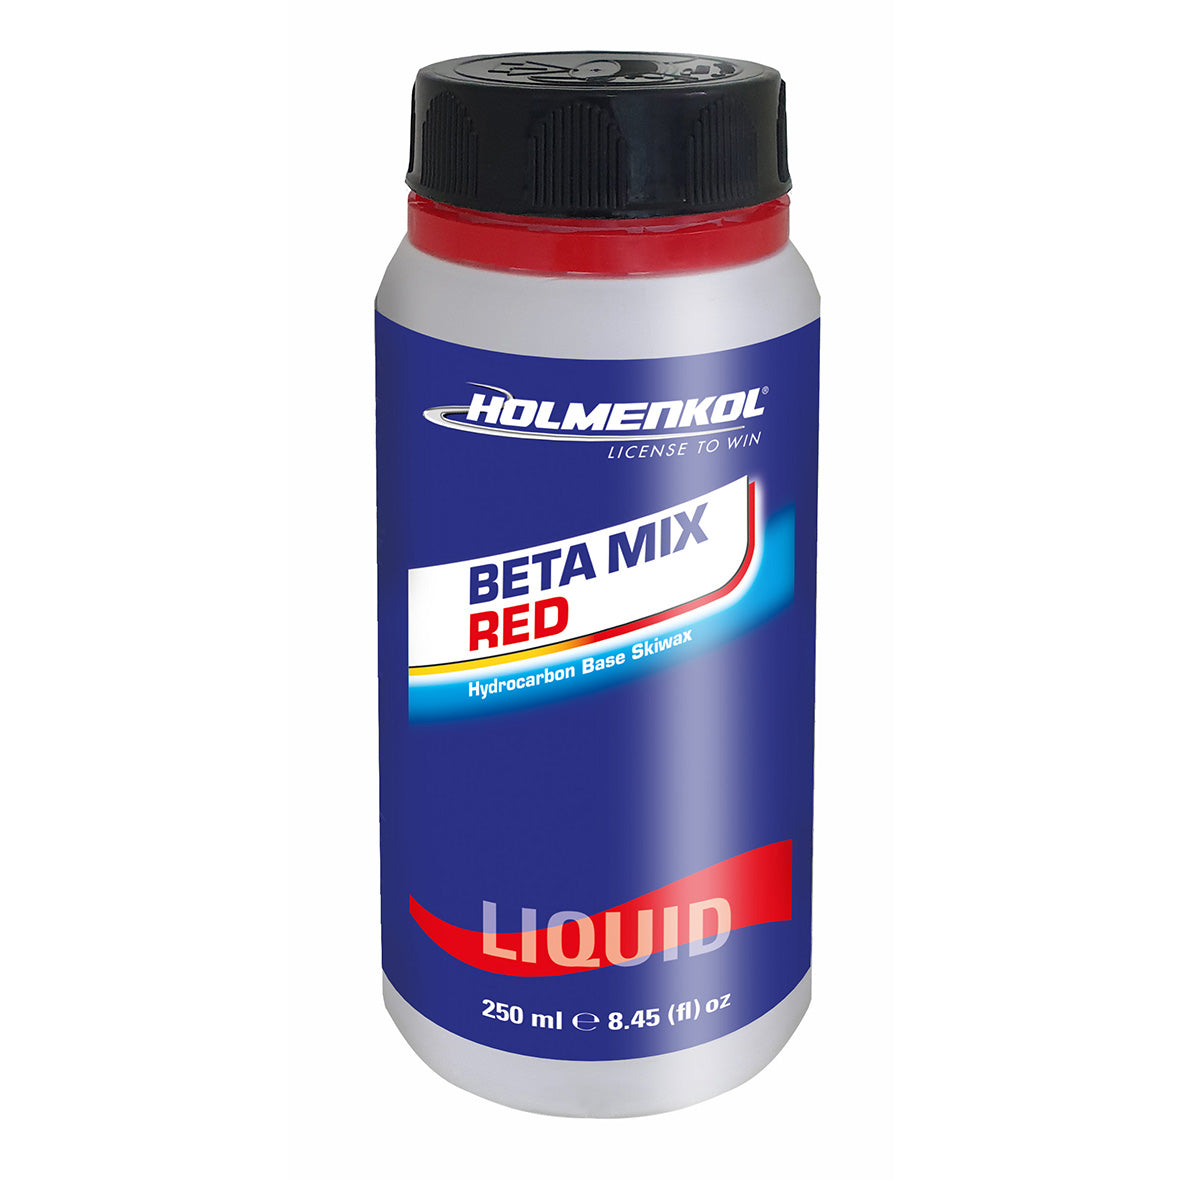 Holmenkol Beta Mix Red liquid 250ml - 0